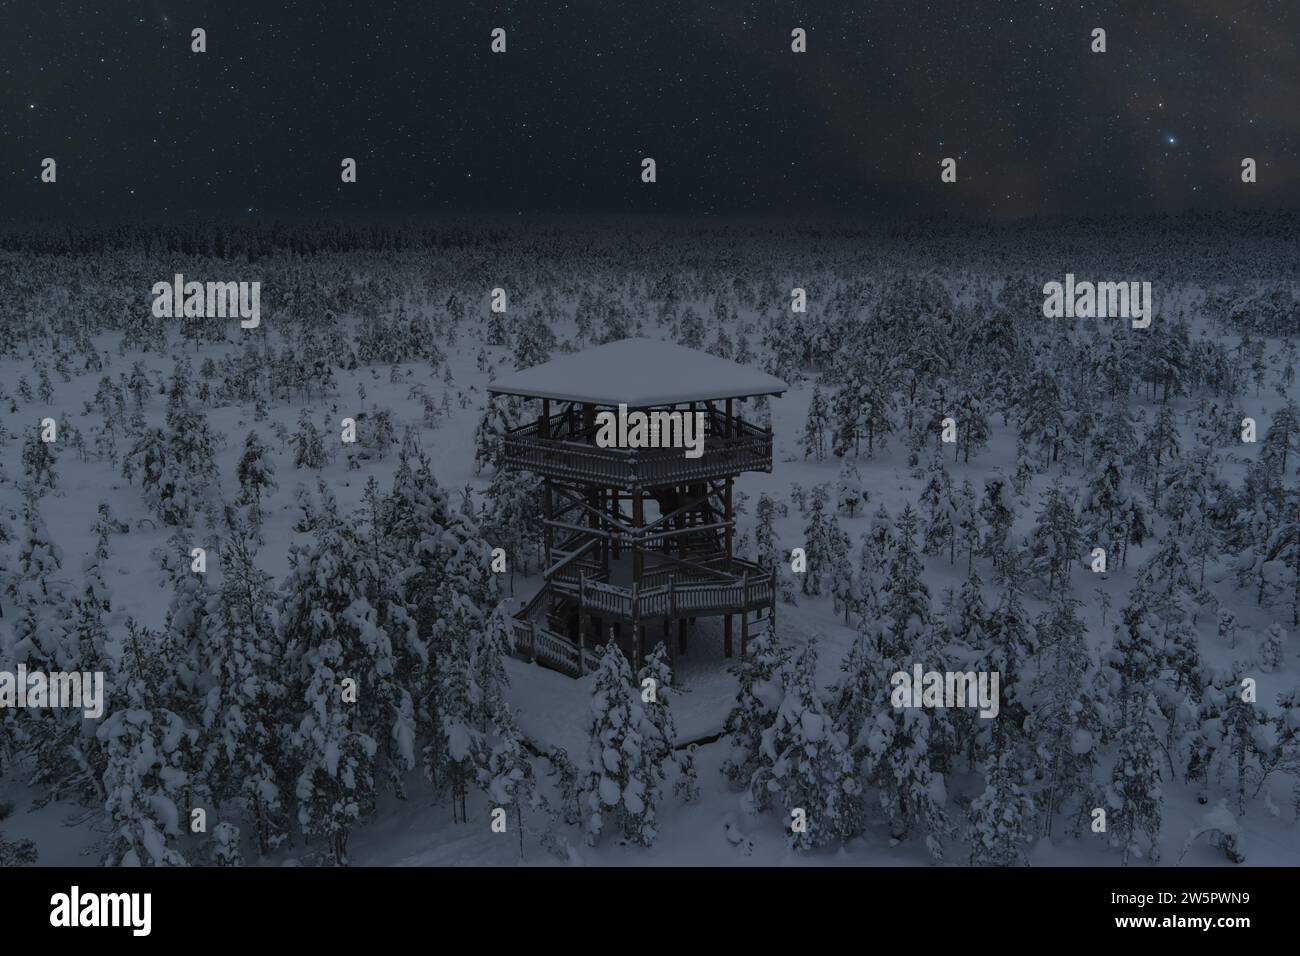 Scène de nuit, nature estonienne en hiver, tour d'observation sur le marais Viru et ciel étoilé. Photo de haute qualité Banque D'Images